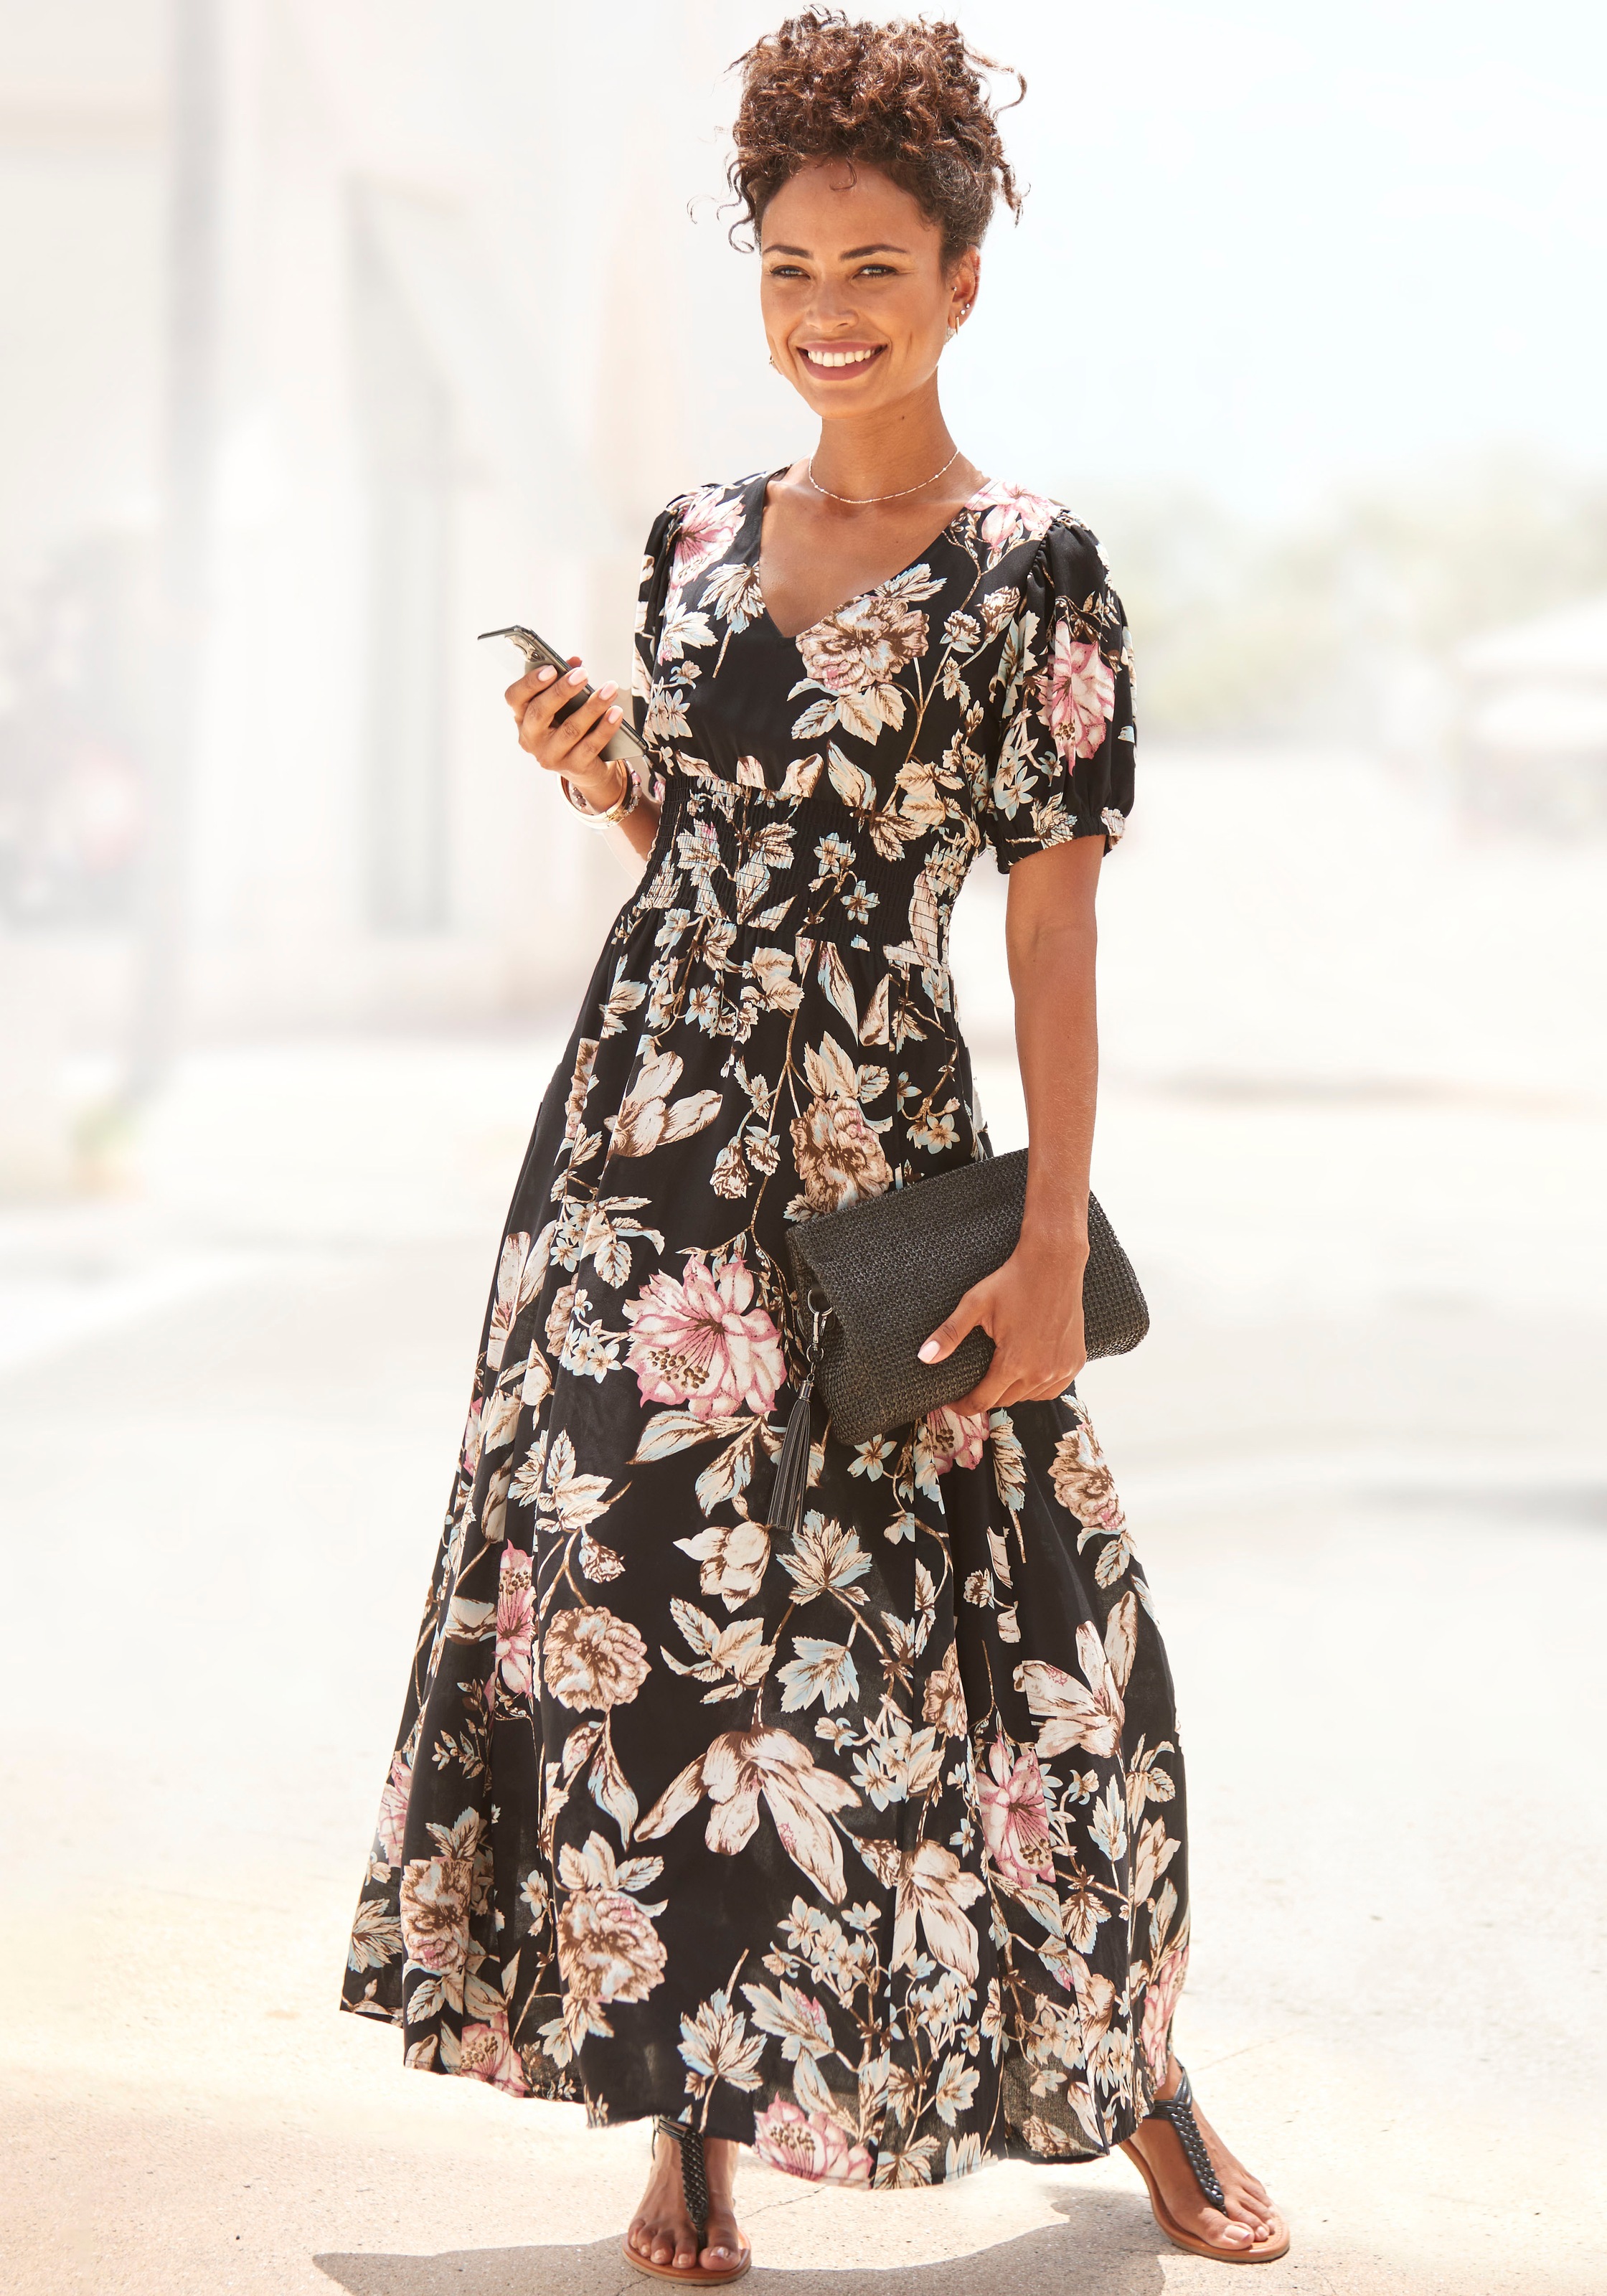 LASCANA Maxikleid, mit Blumendruck und leichten Puffärmeln, Sommerkleid, casual-elegant